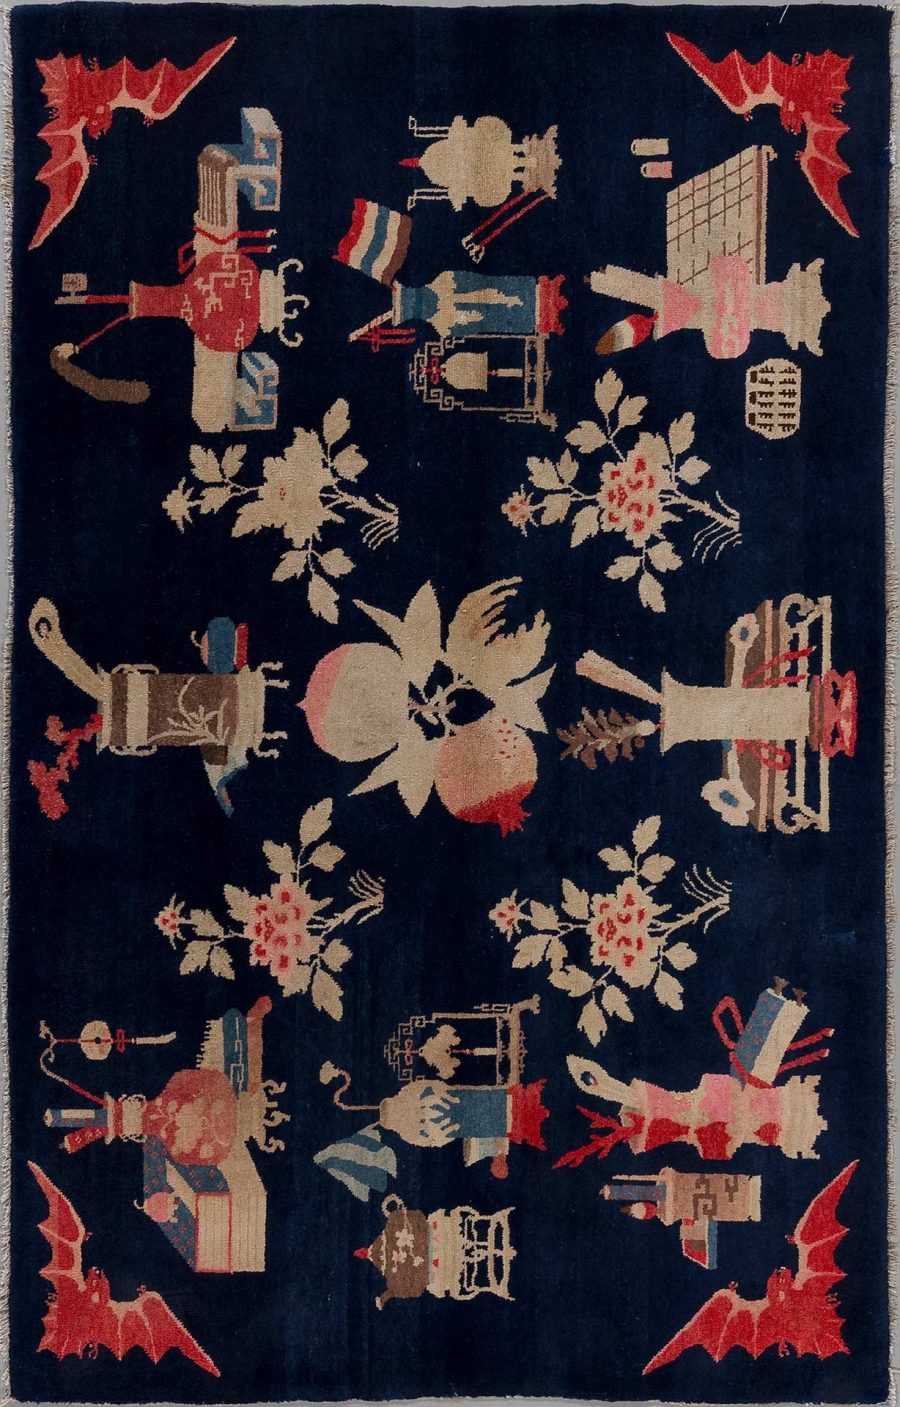 Antiker Teppich mit asiatisch inspirierten Motiven, darunter abstrakte Figuren, Drachen und Blumenmuster, auf dunkelblauem Hintergrund.